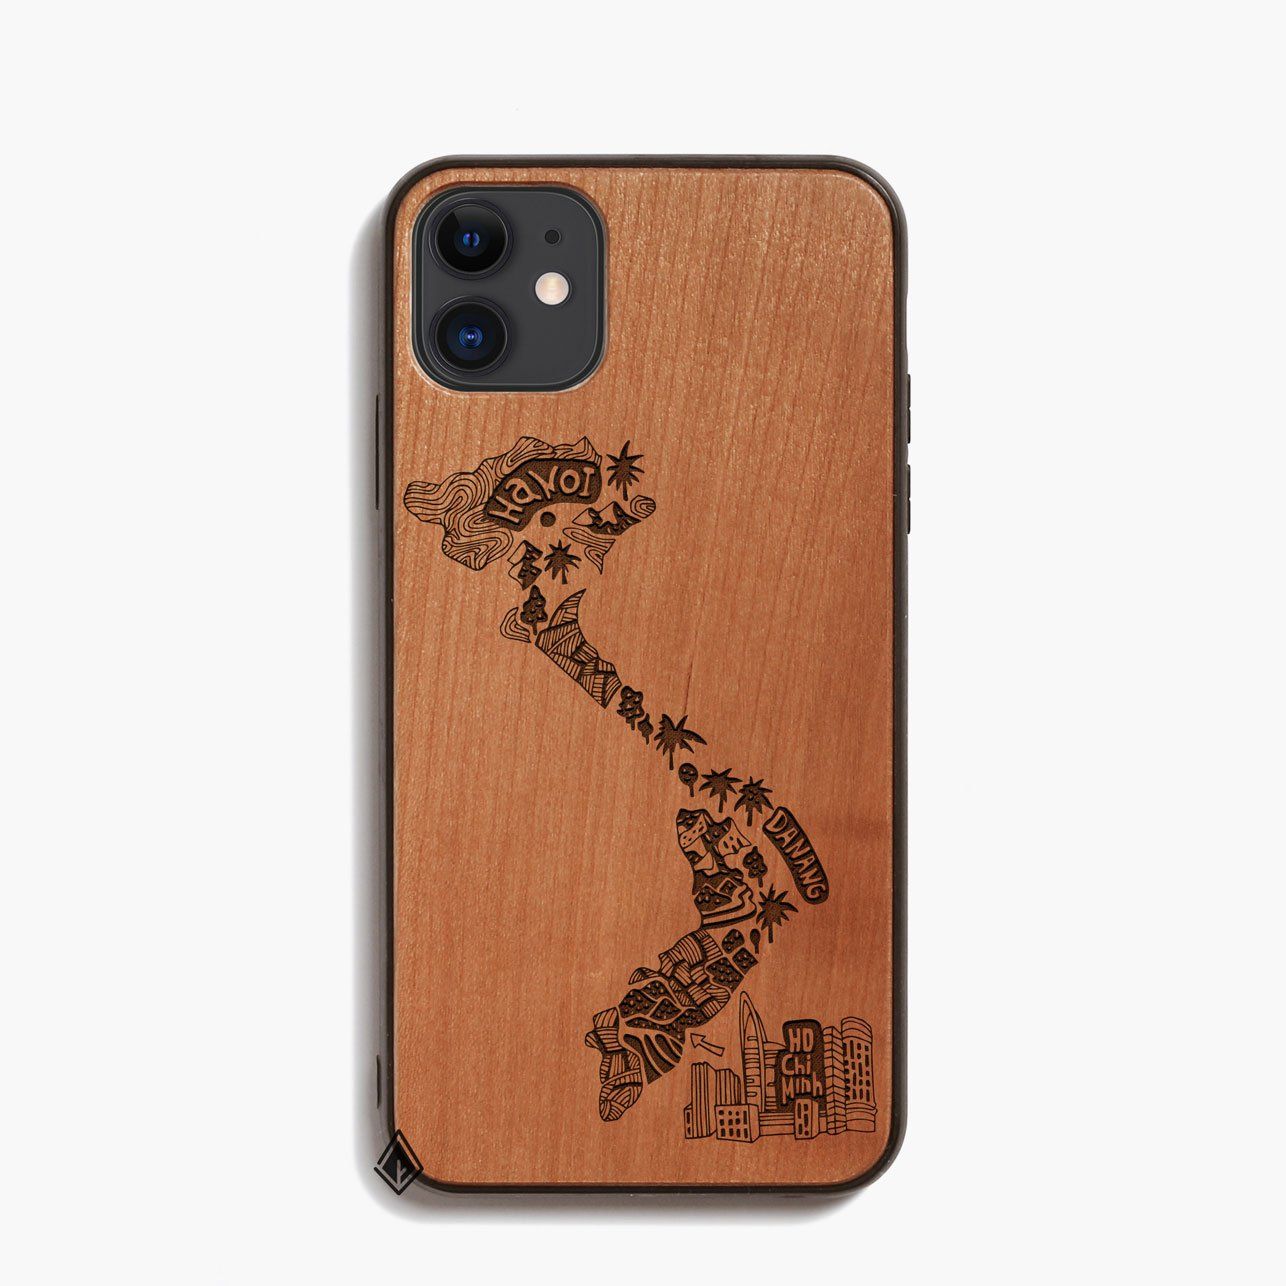 Ốp lưng gỗ cherry kết hợp với bản đồ Việt Nam sẽ làm nổi bật phong cách của bạn. Bạn có thể truy cập bản đồ một cách nhanh chóng và thuận tiện từ điện thoại của mình. Chất liệu gỗ tự nhiên cùng kiểu dáng đơn giản sẽ tạo nên một phong cách độc đáo cho chiếc iPhone của bạn.